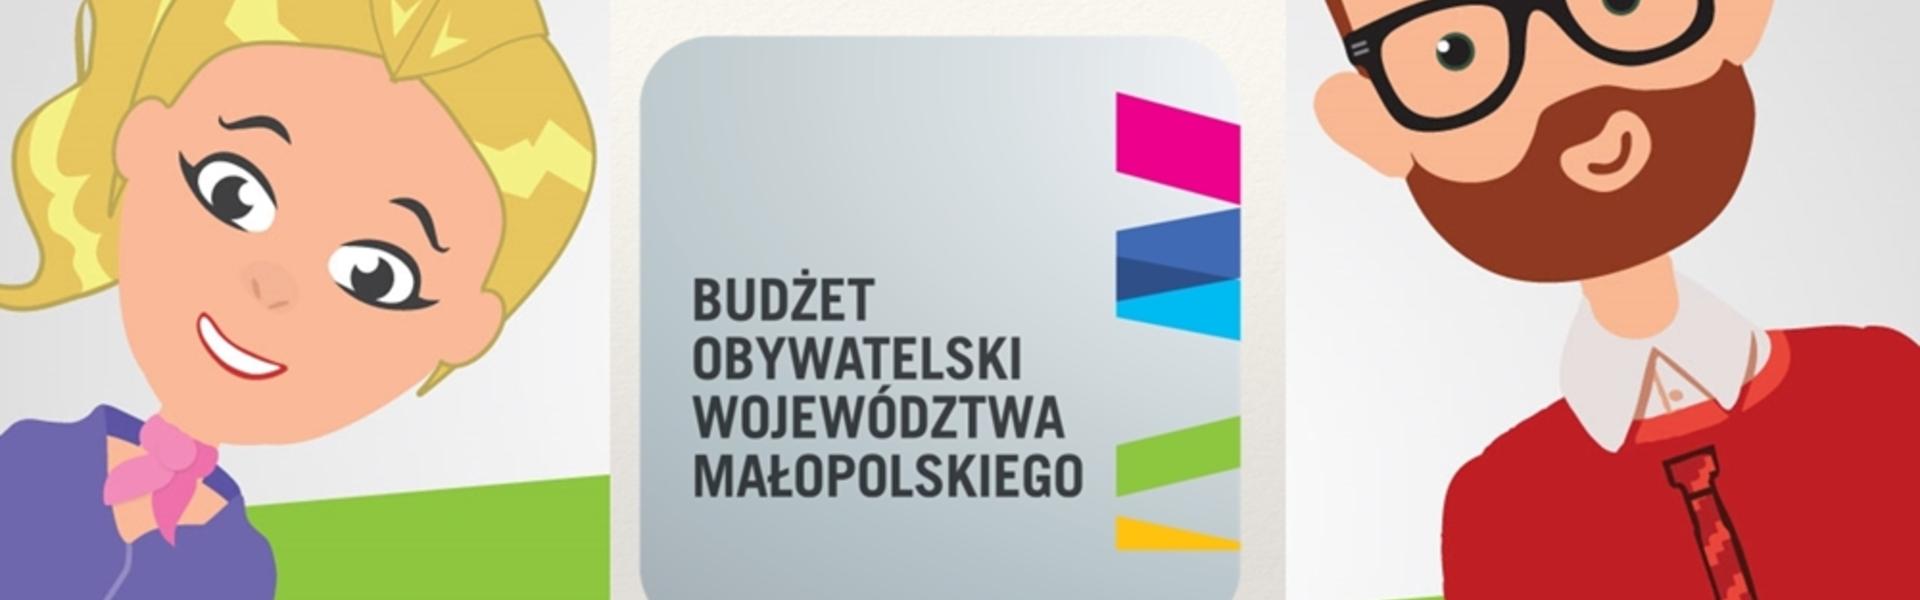 Budżet Obywatelski Woj. Małopolskiego 2019